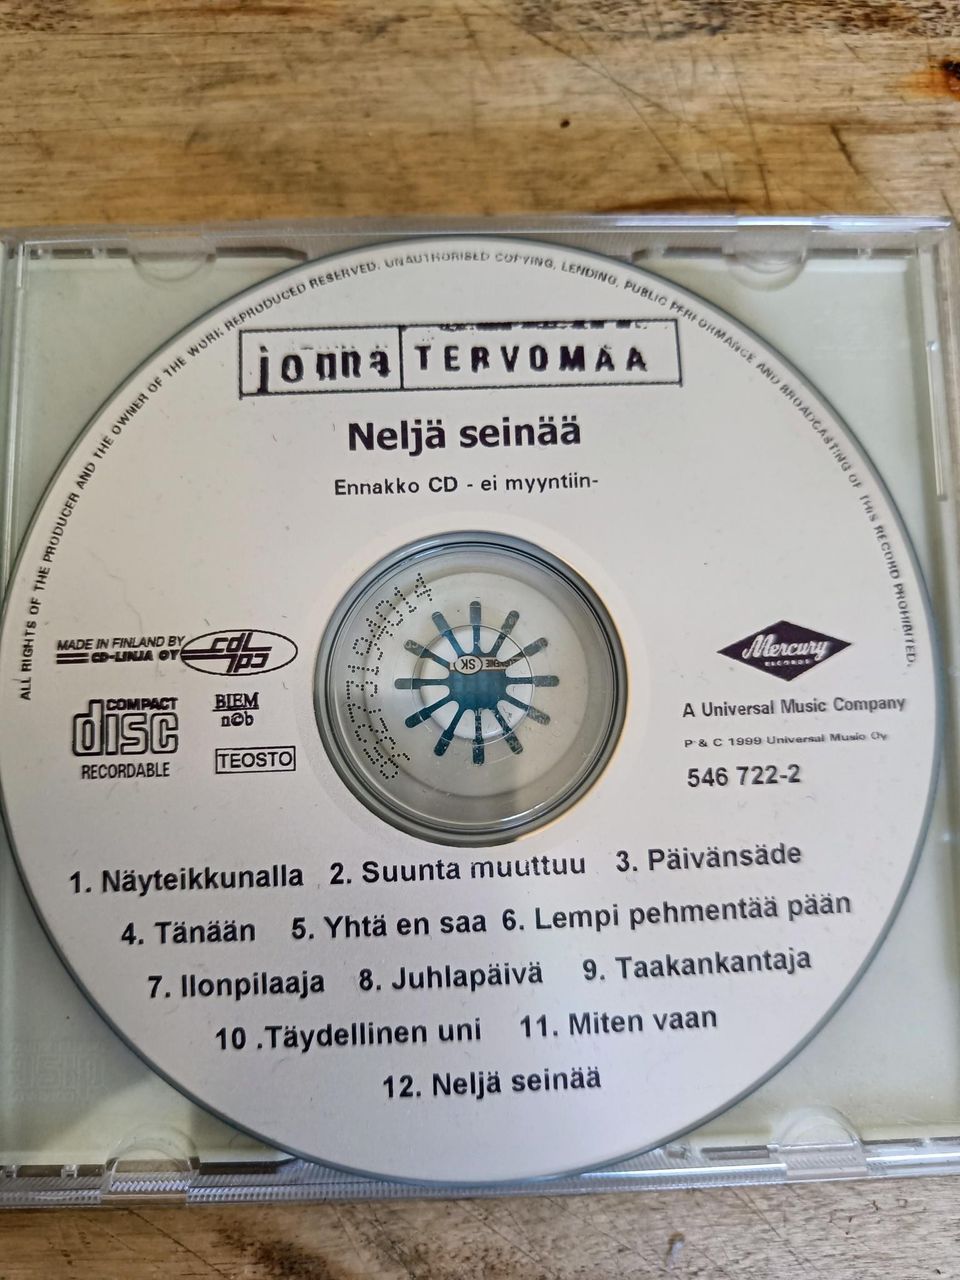 Jonna Tervomaa - Promo CD - ei myyntiin